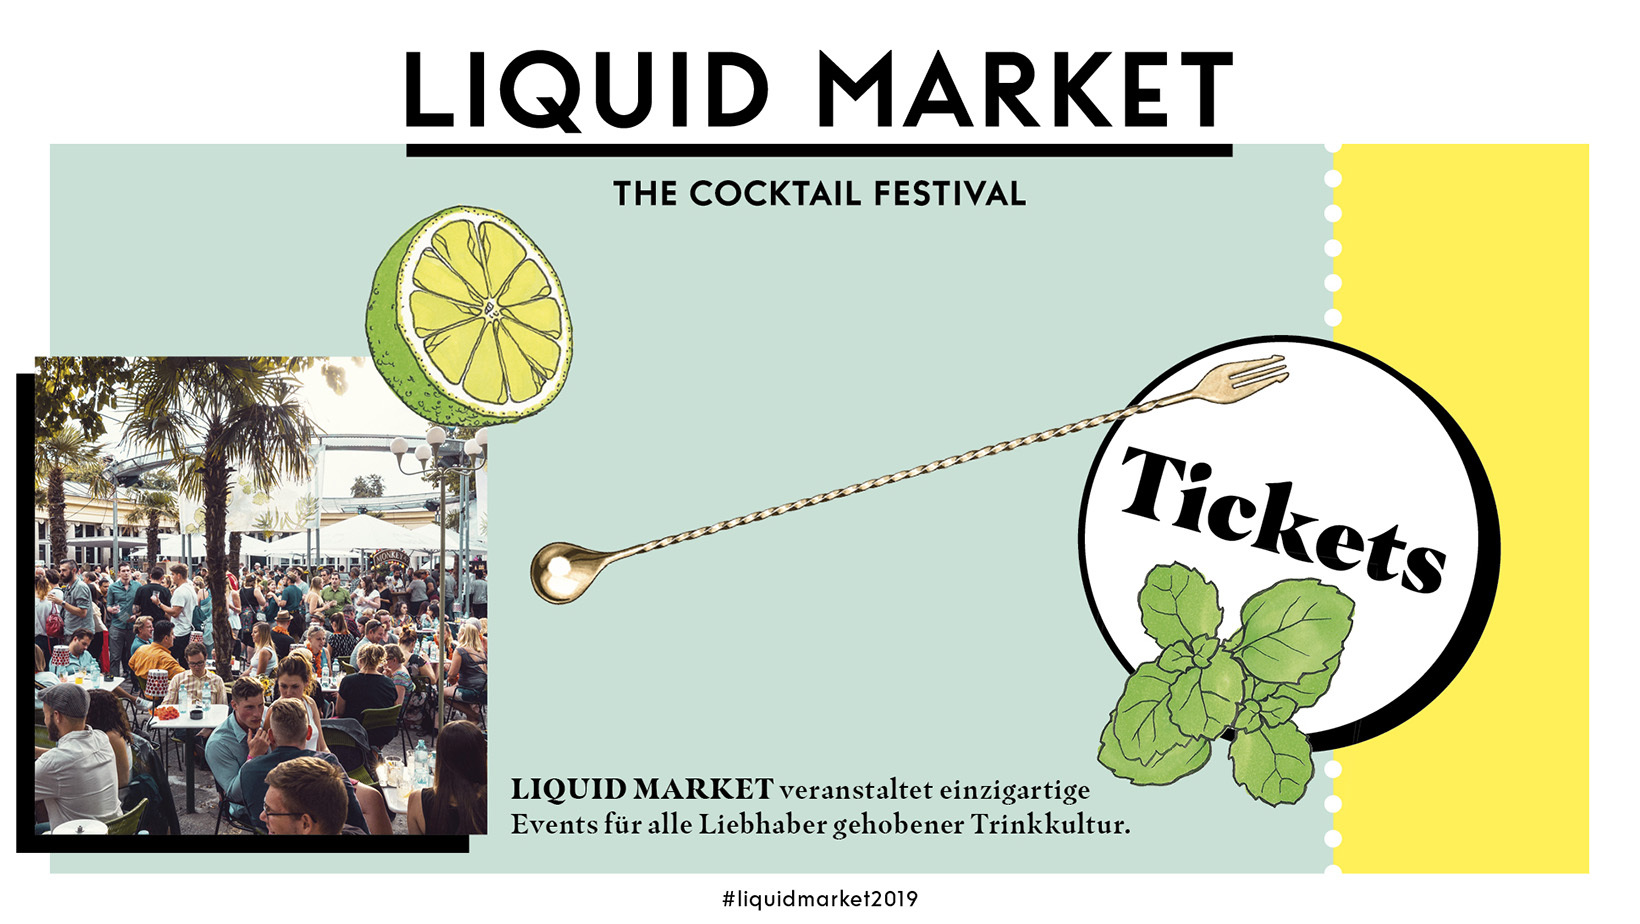 Liquid_market_image001